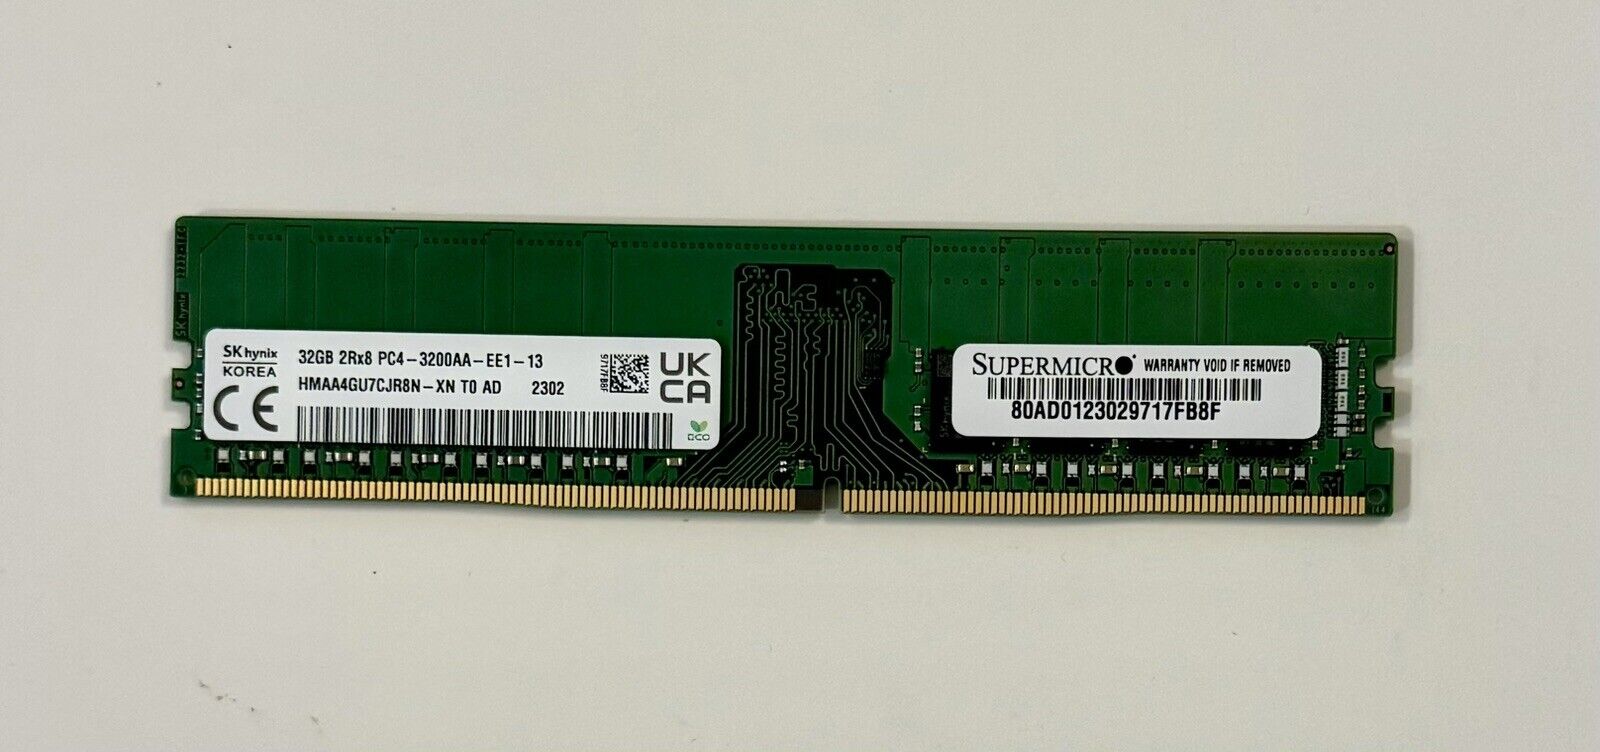 SK Hynix 32GB 2Rx8 PC4-3200AA-EE1-13 HMAA4GU7CJR8N-XN To AD 2302 Server RAM